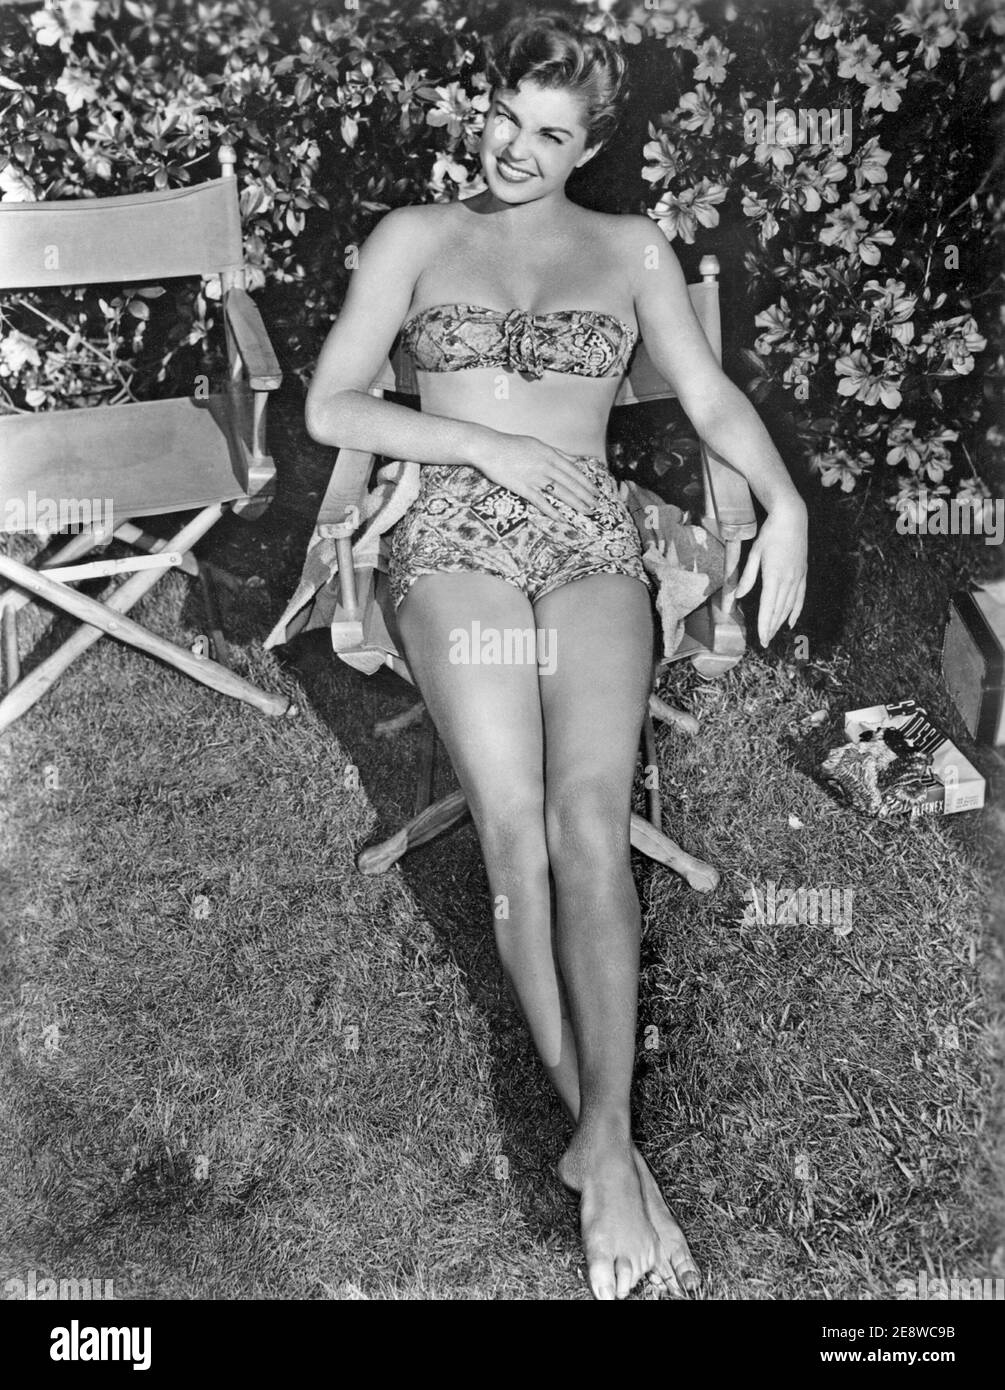 Esther Williams. Nuotatore competitivo americano e attrice nata l'8 agosto 1921, morì il 6 giugno 2013. Foto Stock